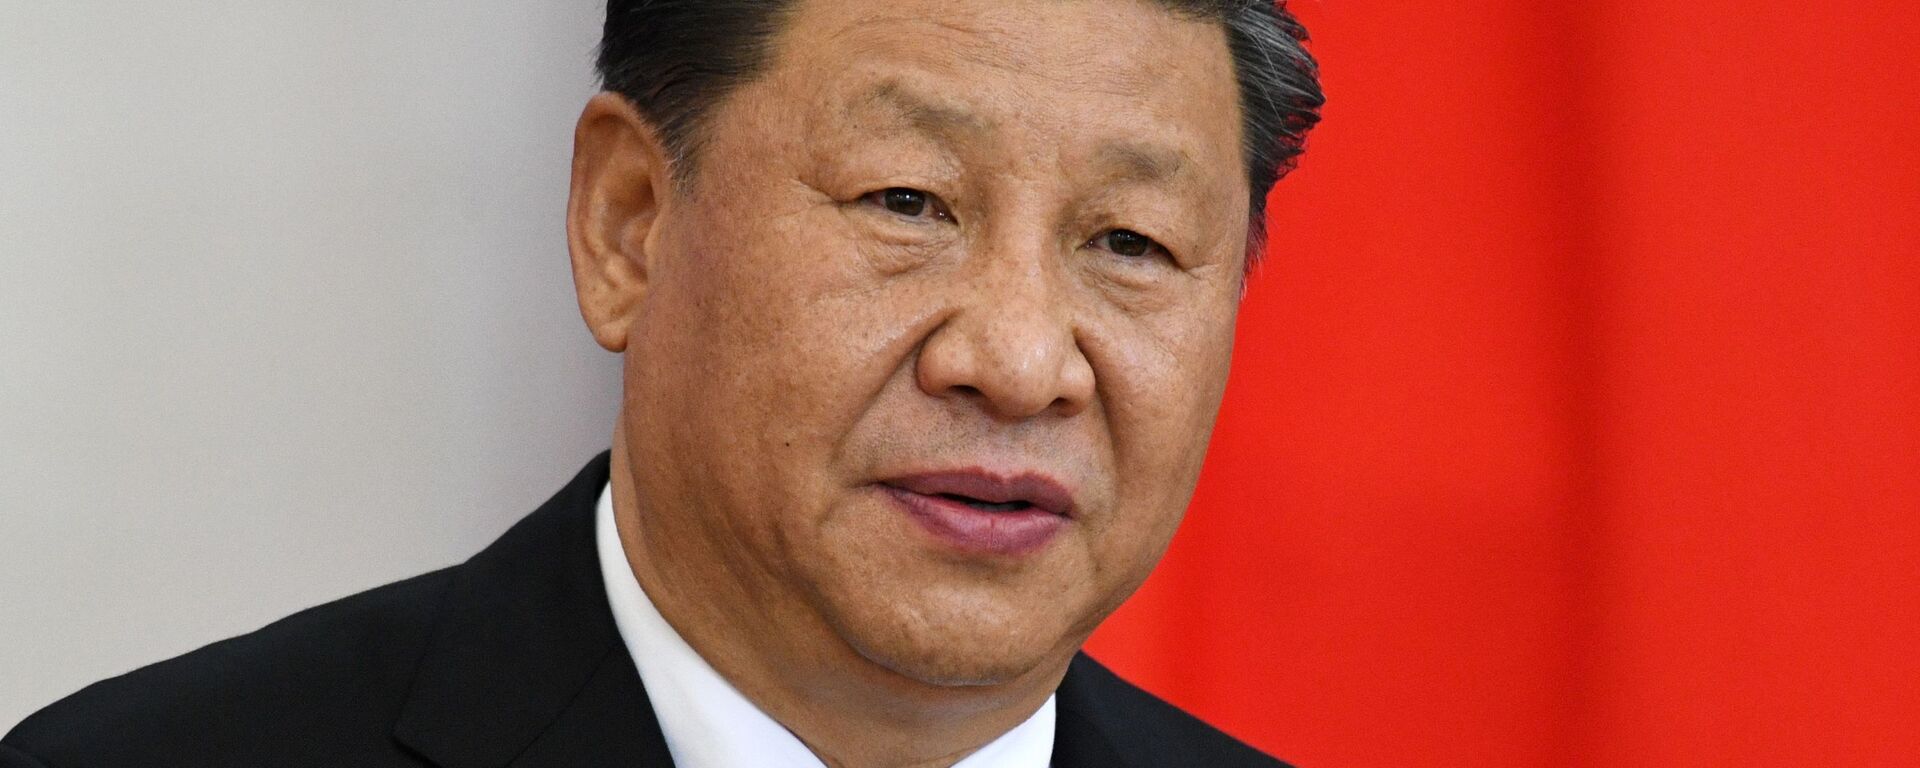 Xi Jinping, presidente de China - Sputnik Mundo, 1920, 20.04.2021